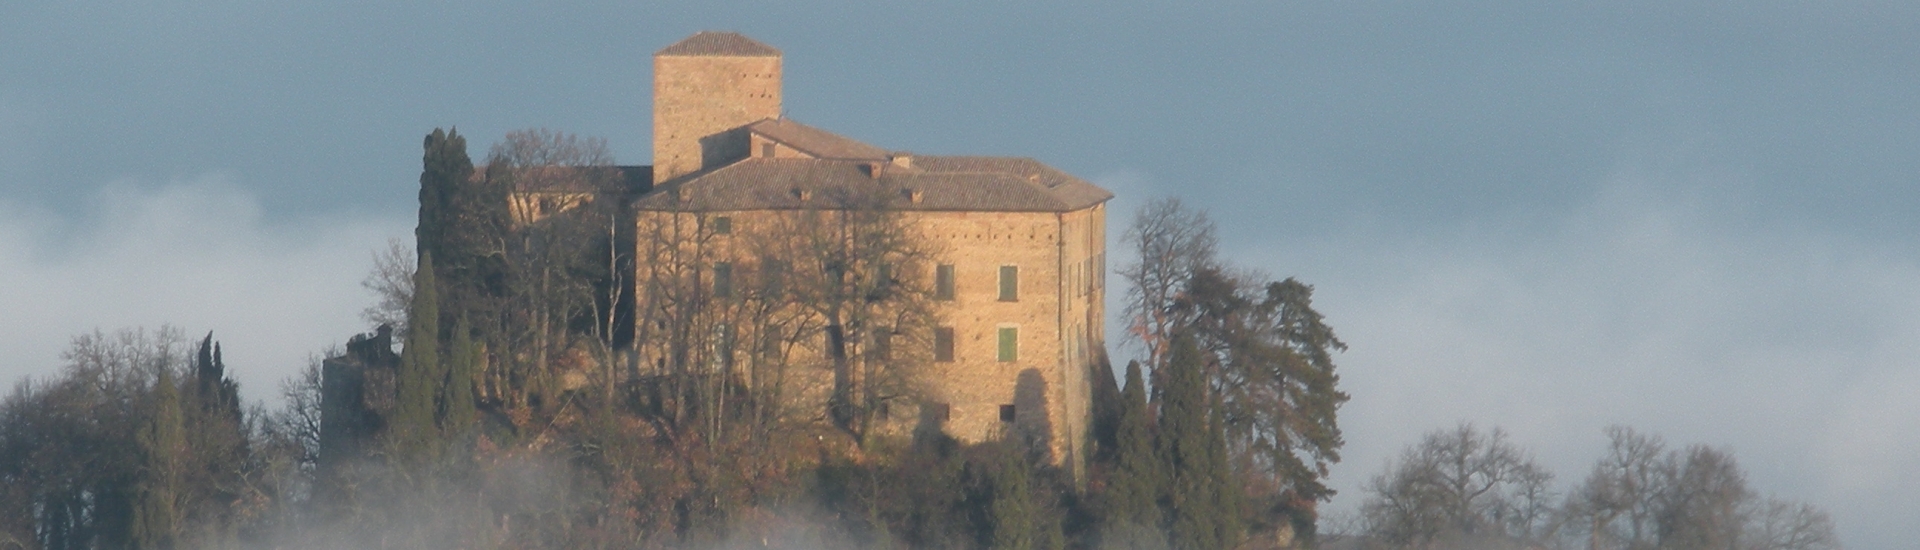 Castello di Bianello - Il castello nella nebbia foto di: |Reverberi Claudio| - Archivio fotografico del castello